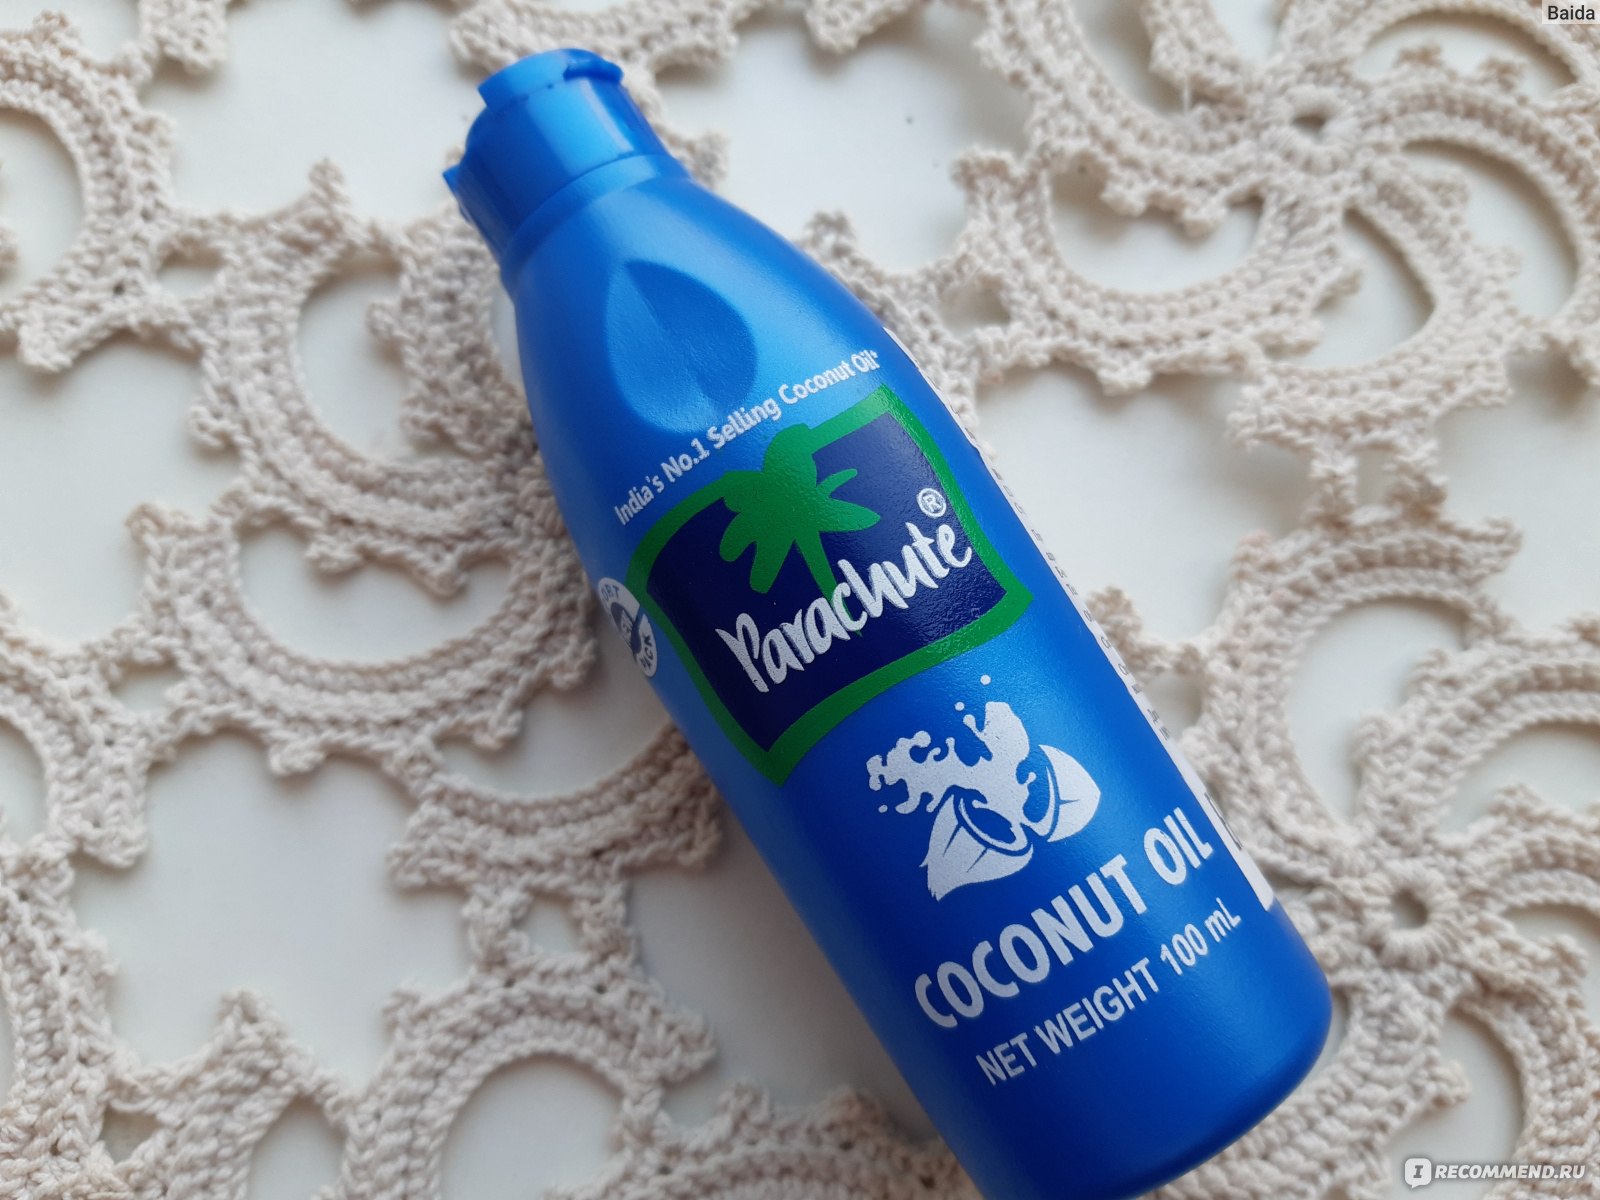 Кокосовое масло для волос синяя бутылка